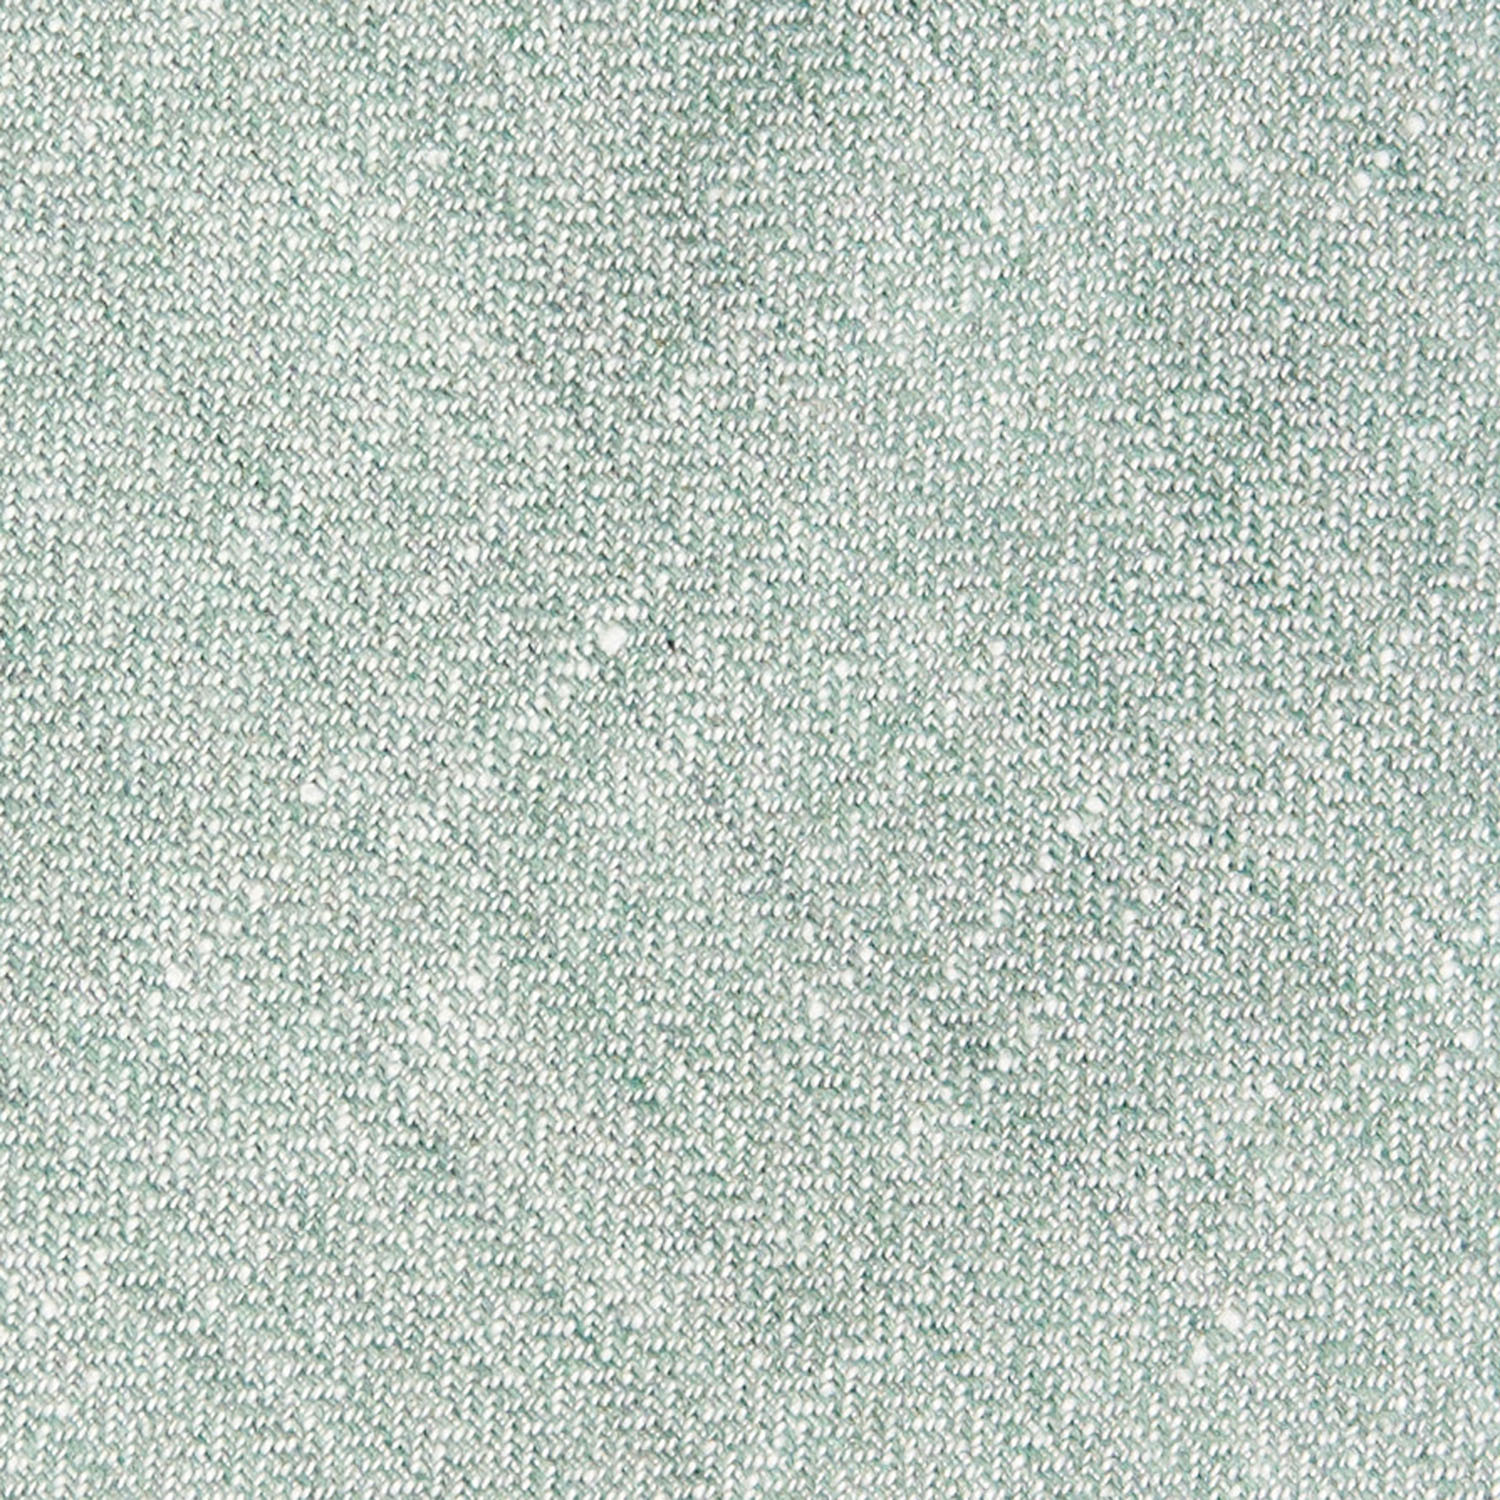 Linen and cotton tie _ cravatta in lino e cotone